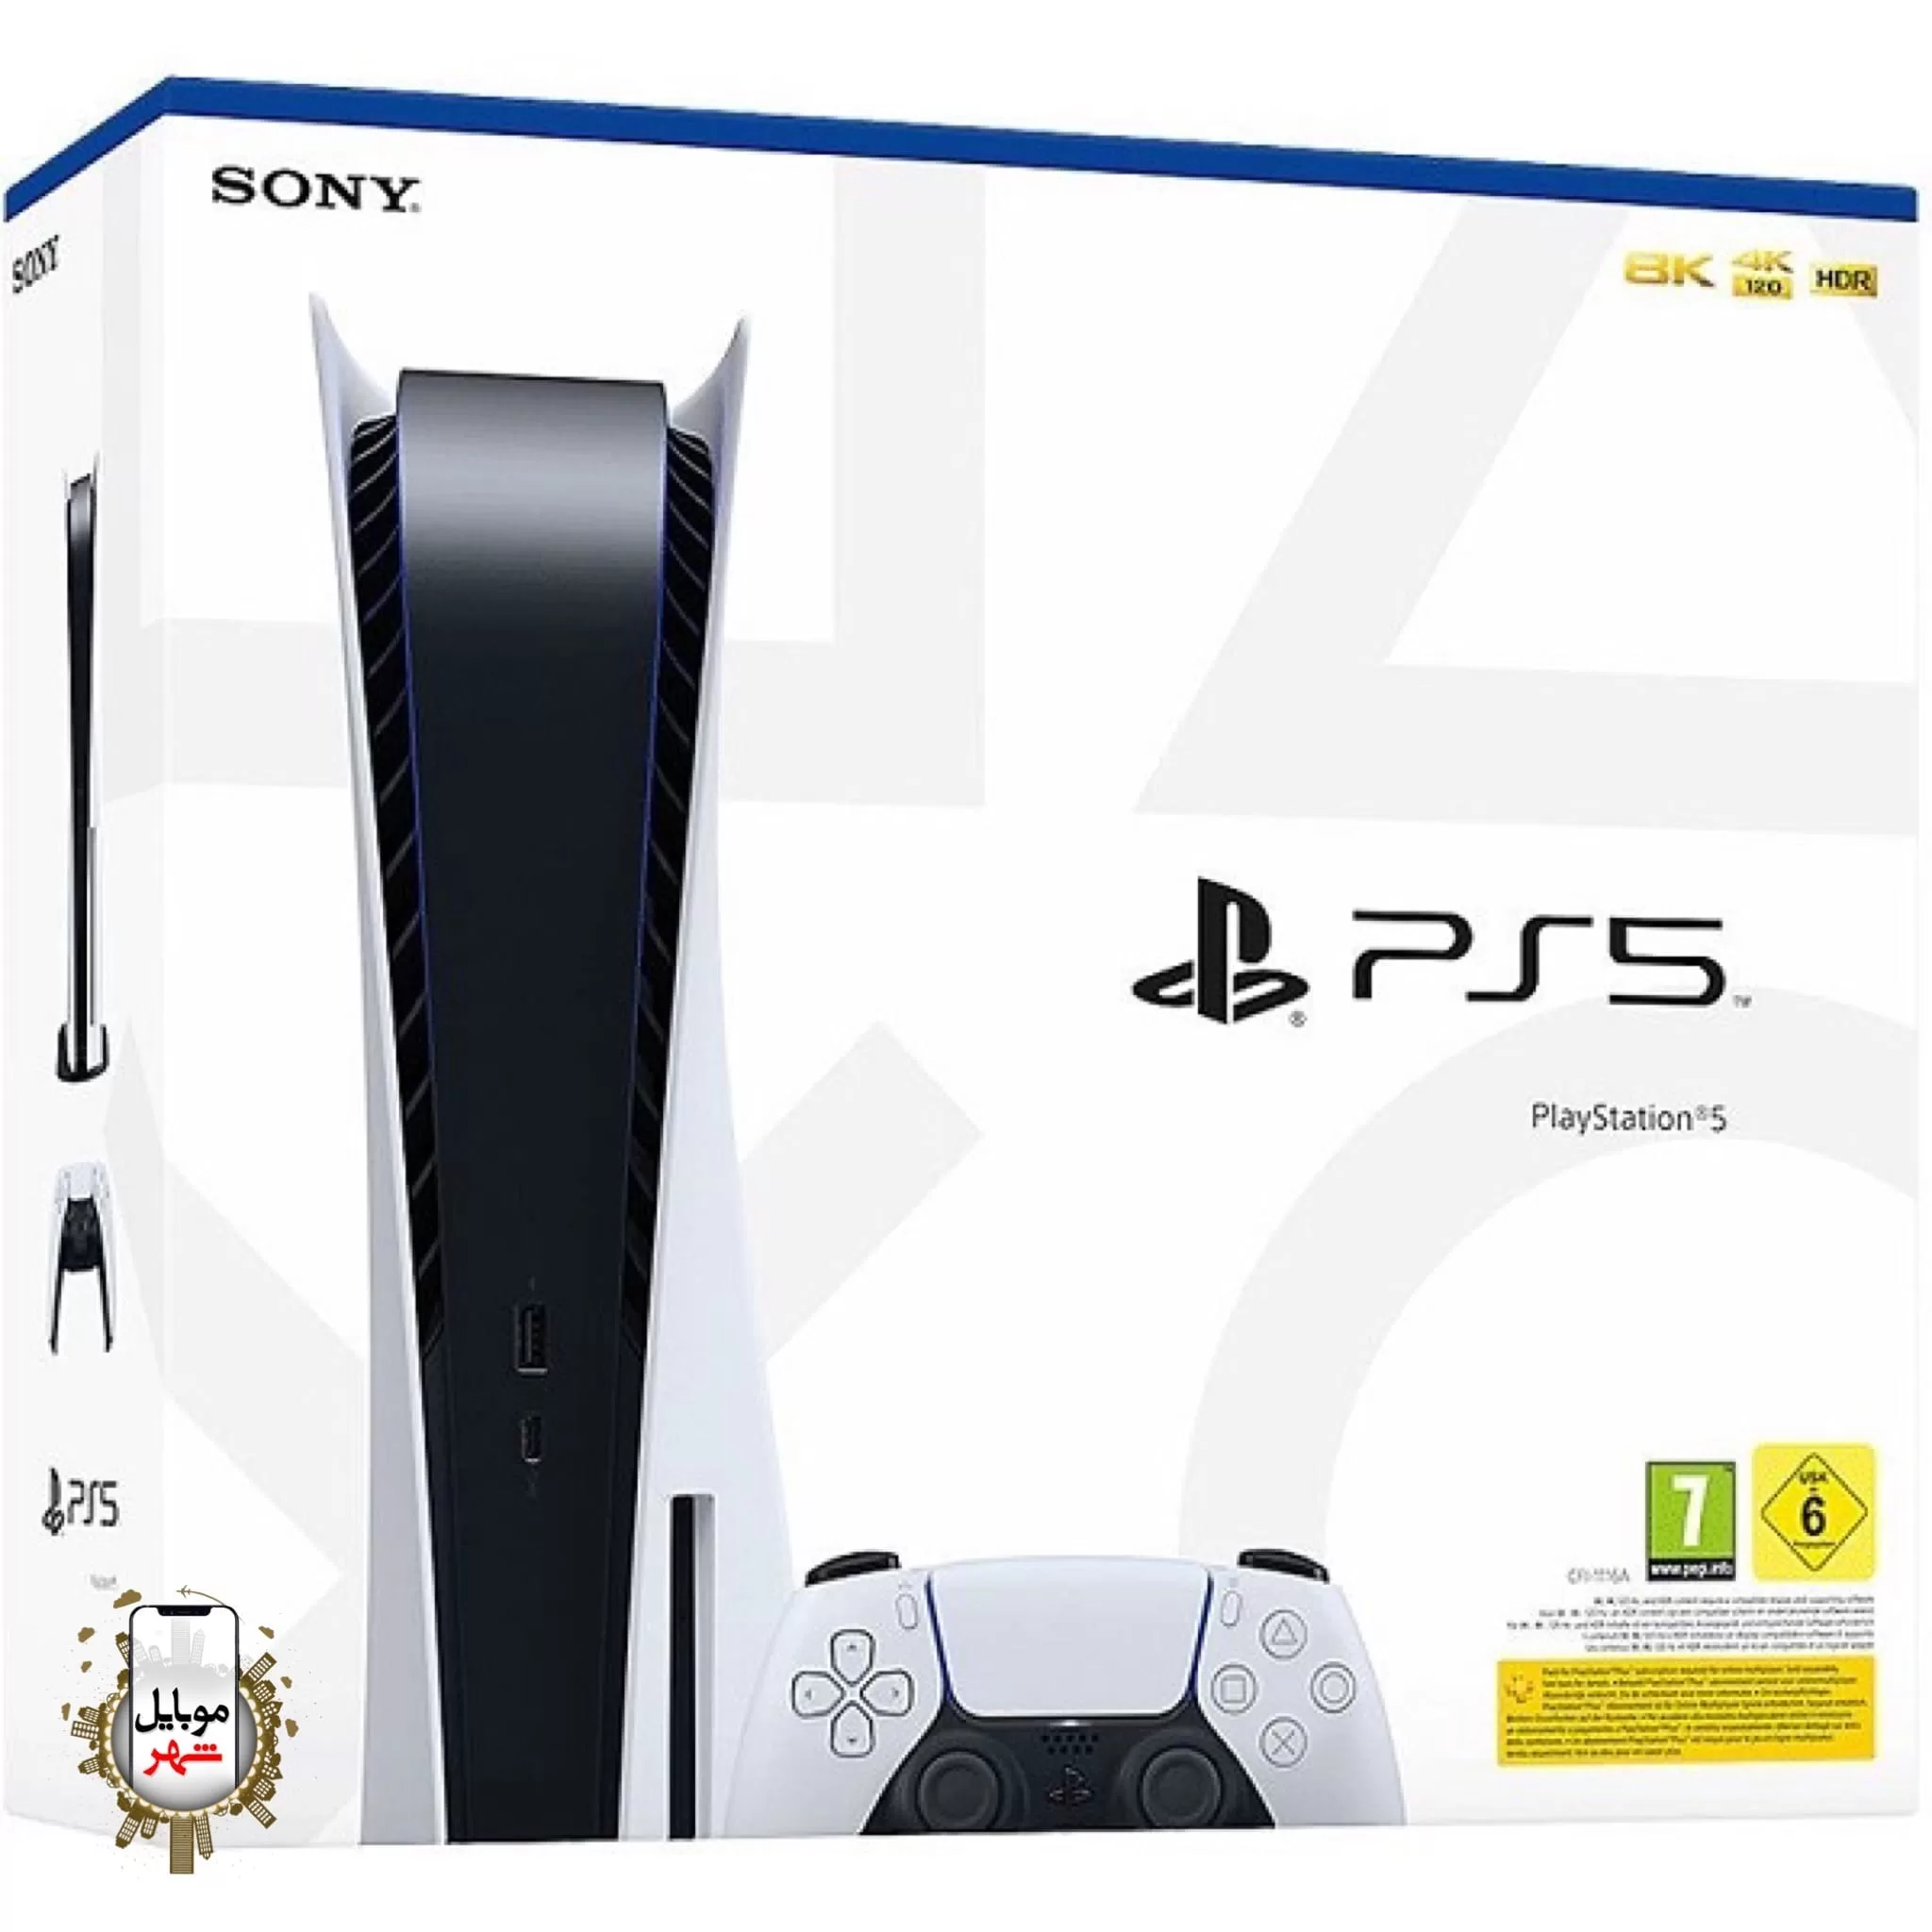 کنسول پلی استیشن 5 سونی Sony PS5 Playstation 5 Consol